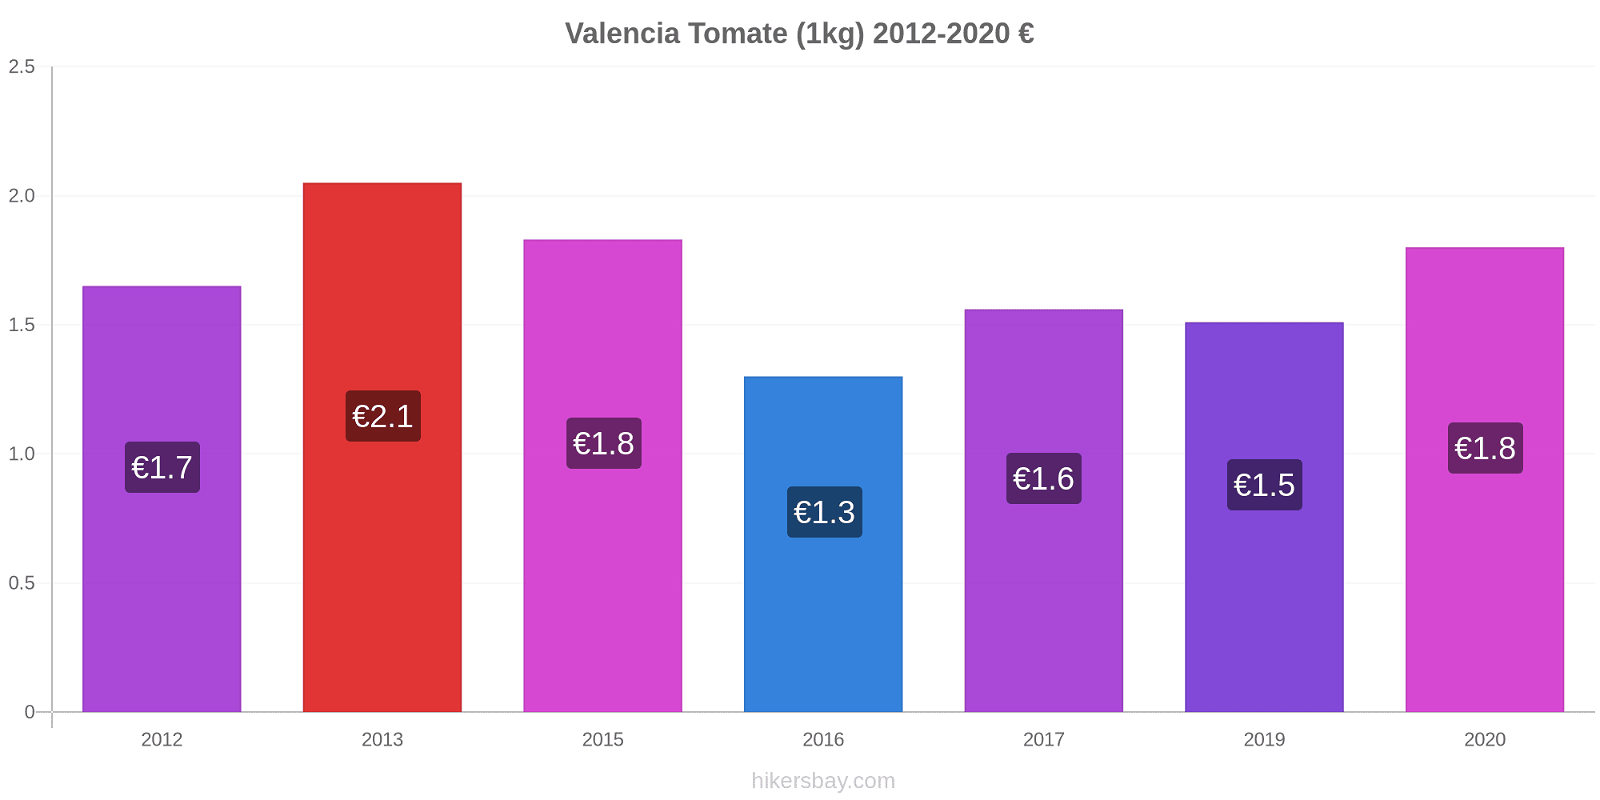 Valencia cambios de precios Tomate (1kg) hikersbay.com